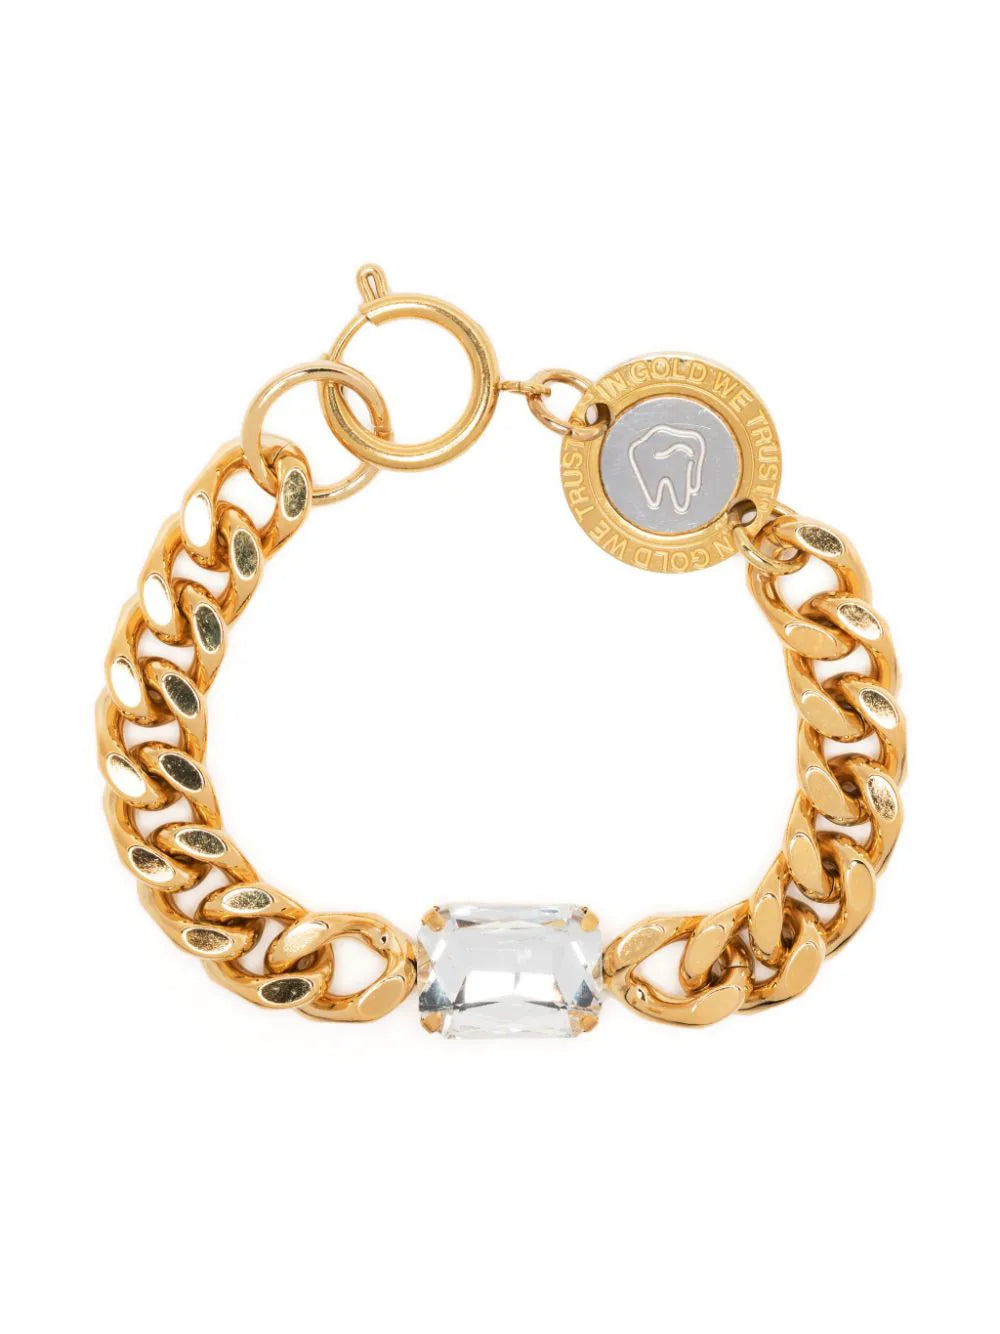 Shop In Gold We Trust Paris 18kt Gold-plated Crystal-embellished Bracelet